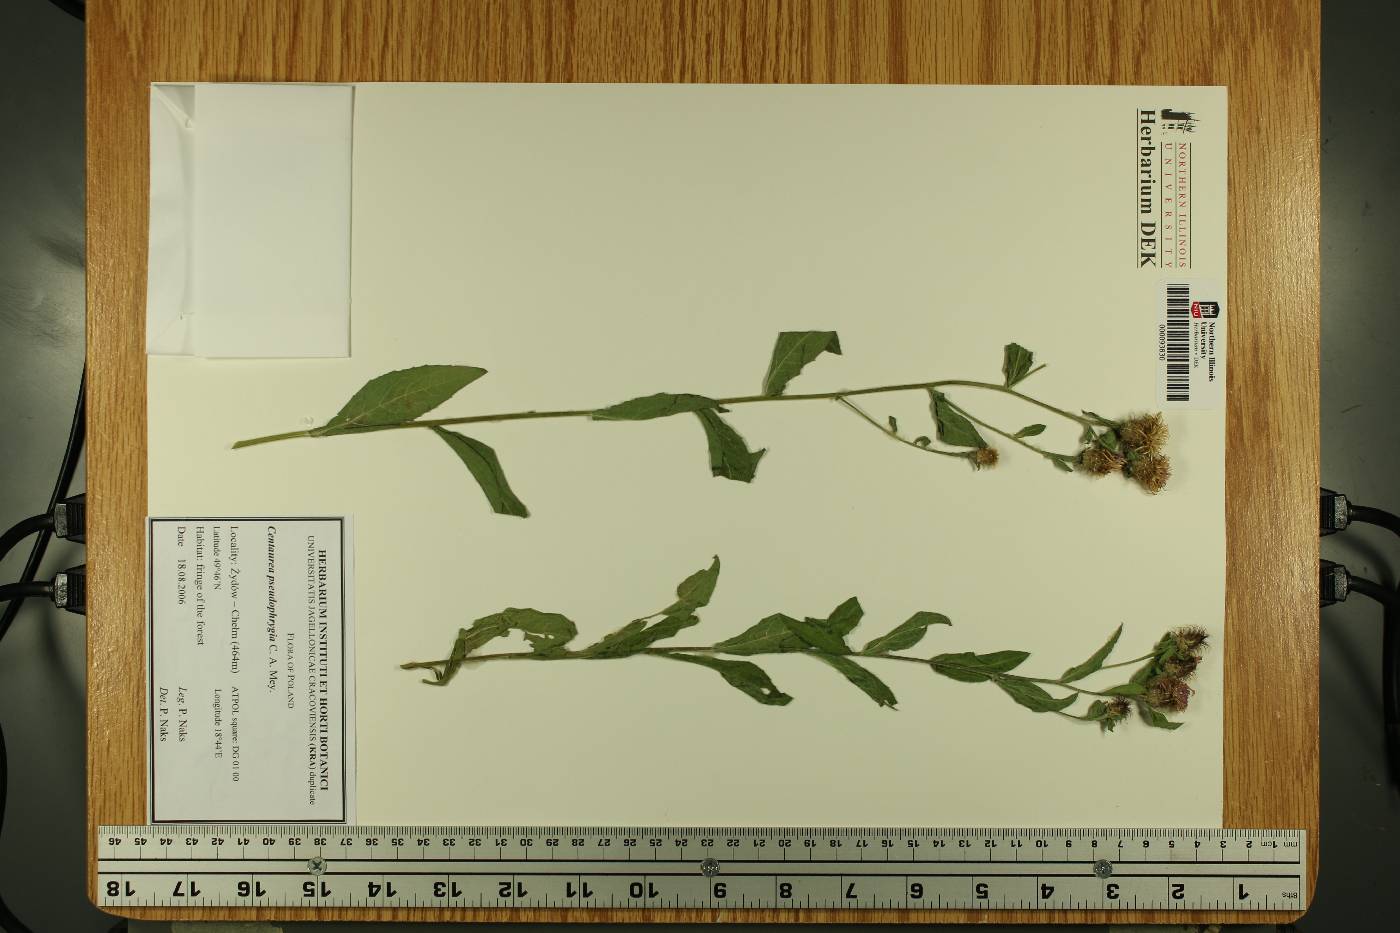 Centaurea phrygia subsp. pseudophrygia image